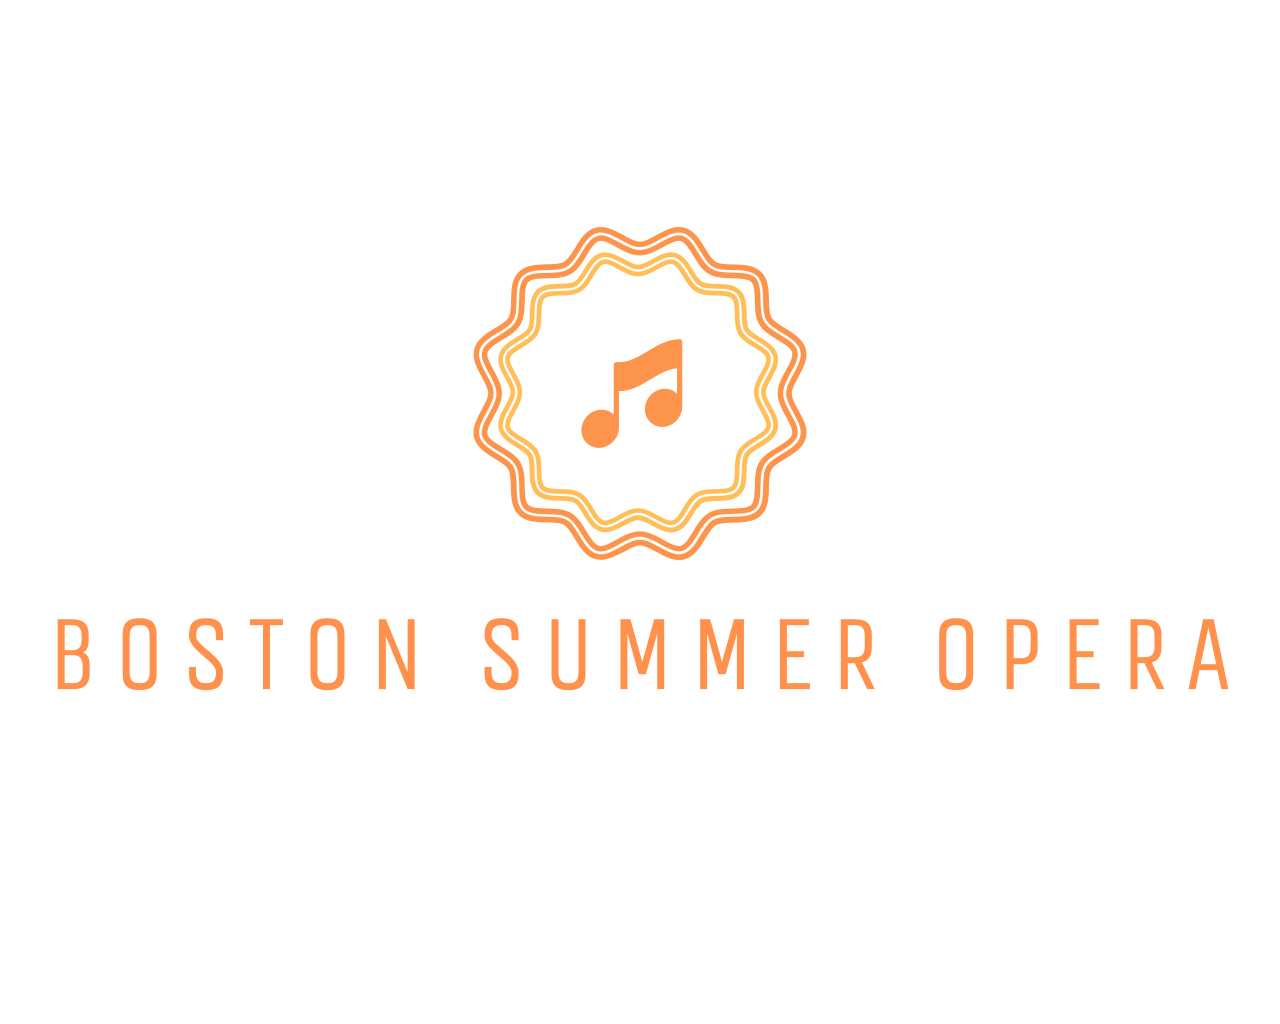 Boston Summer Opera